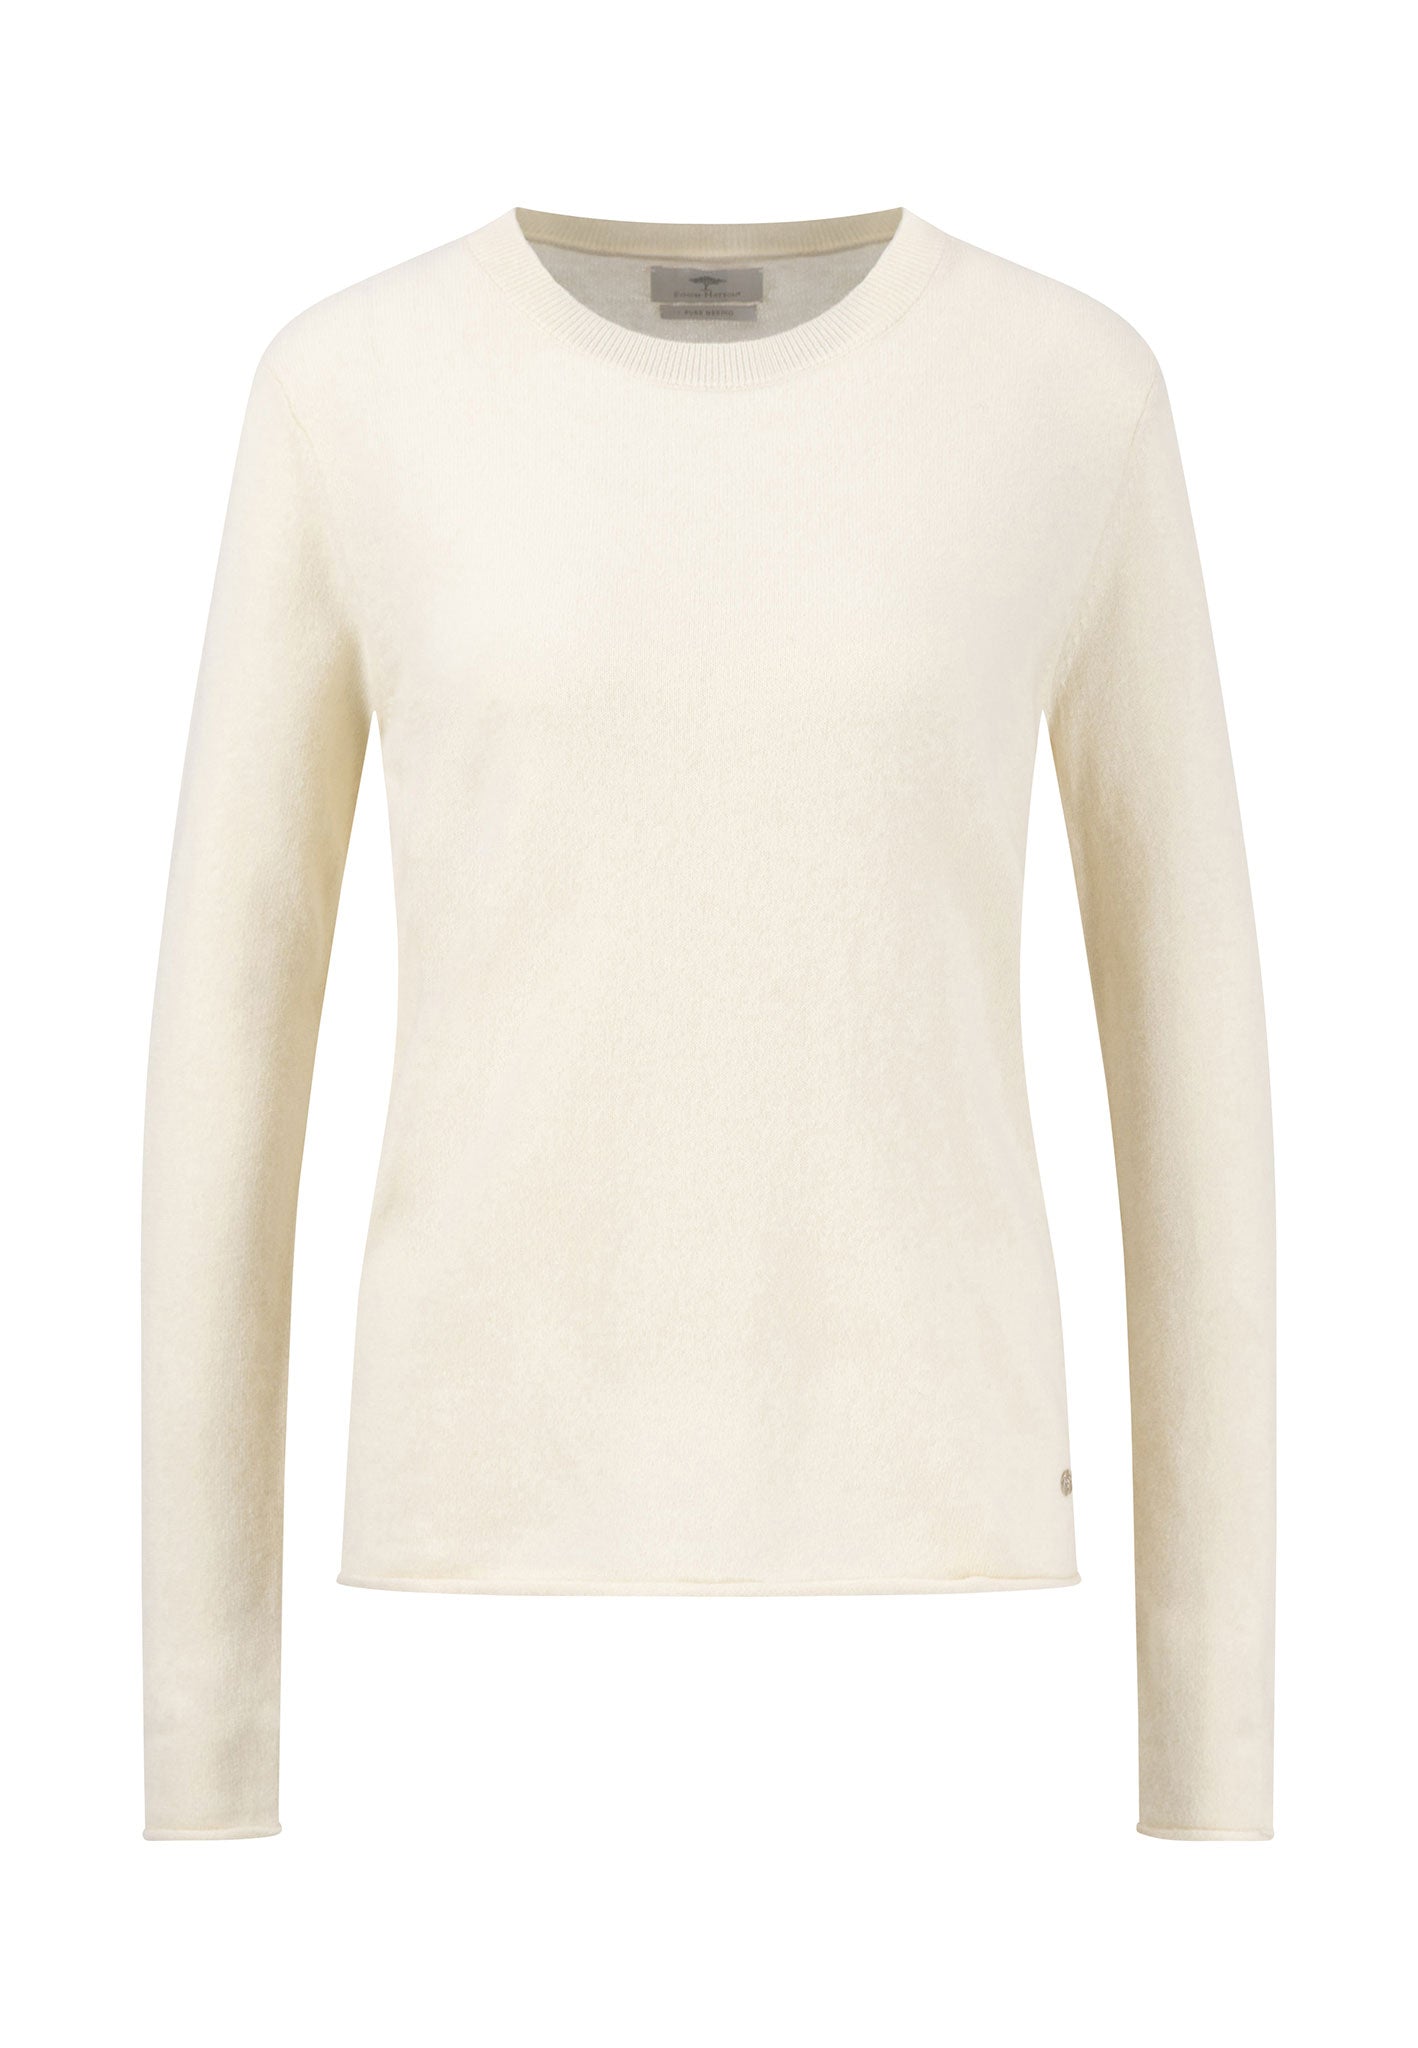 Fynch Hatton Merino Wool Sweater - Off White